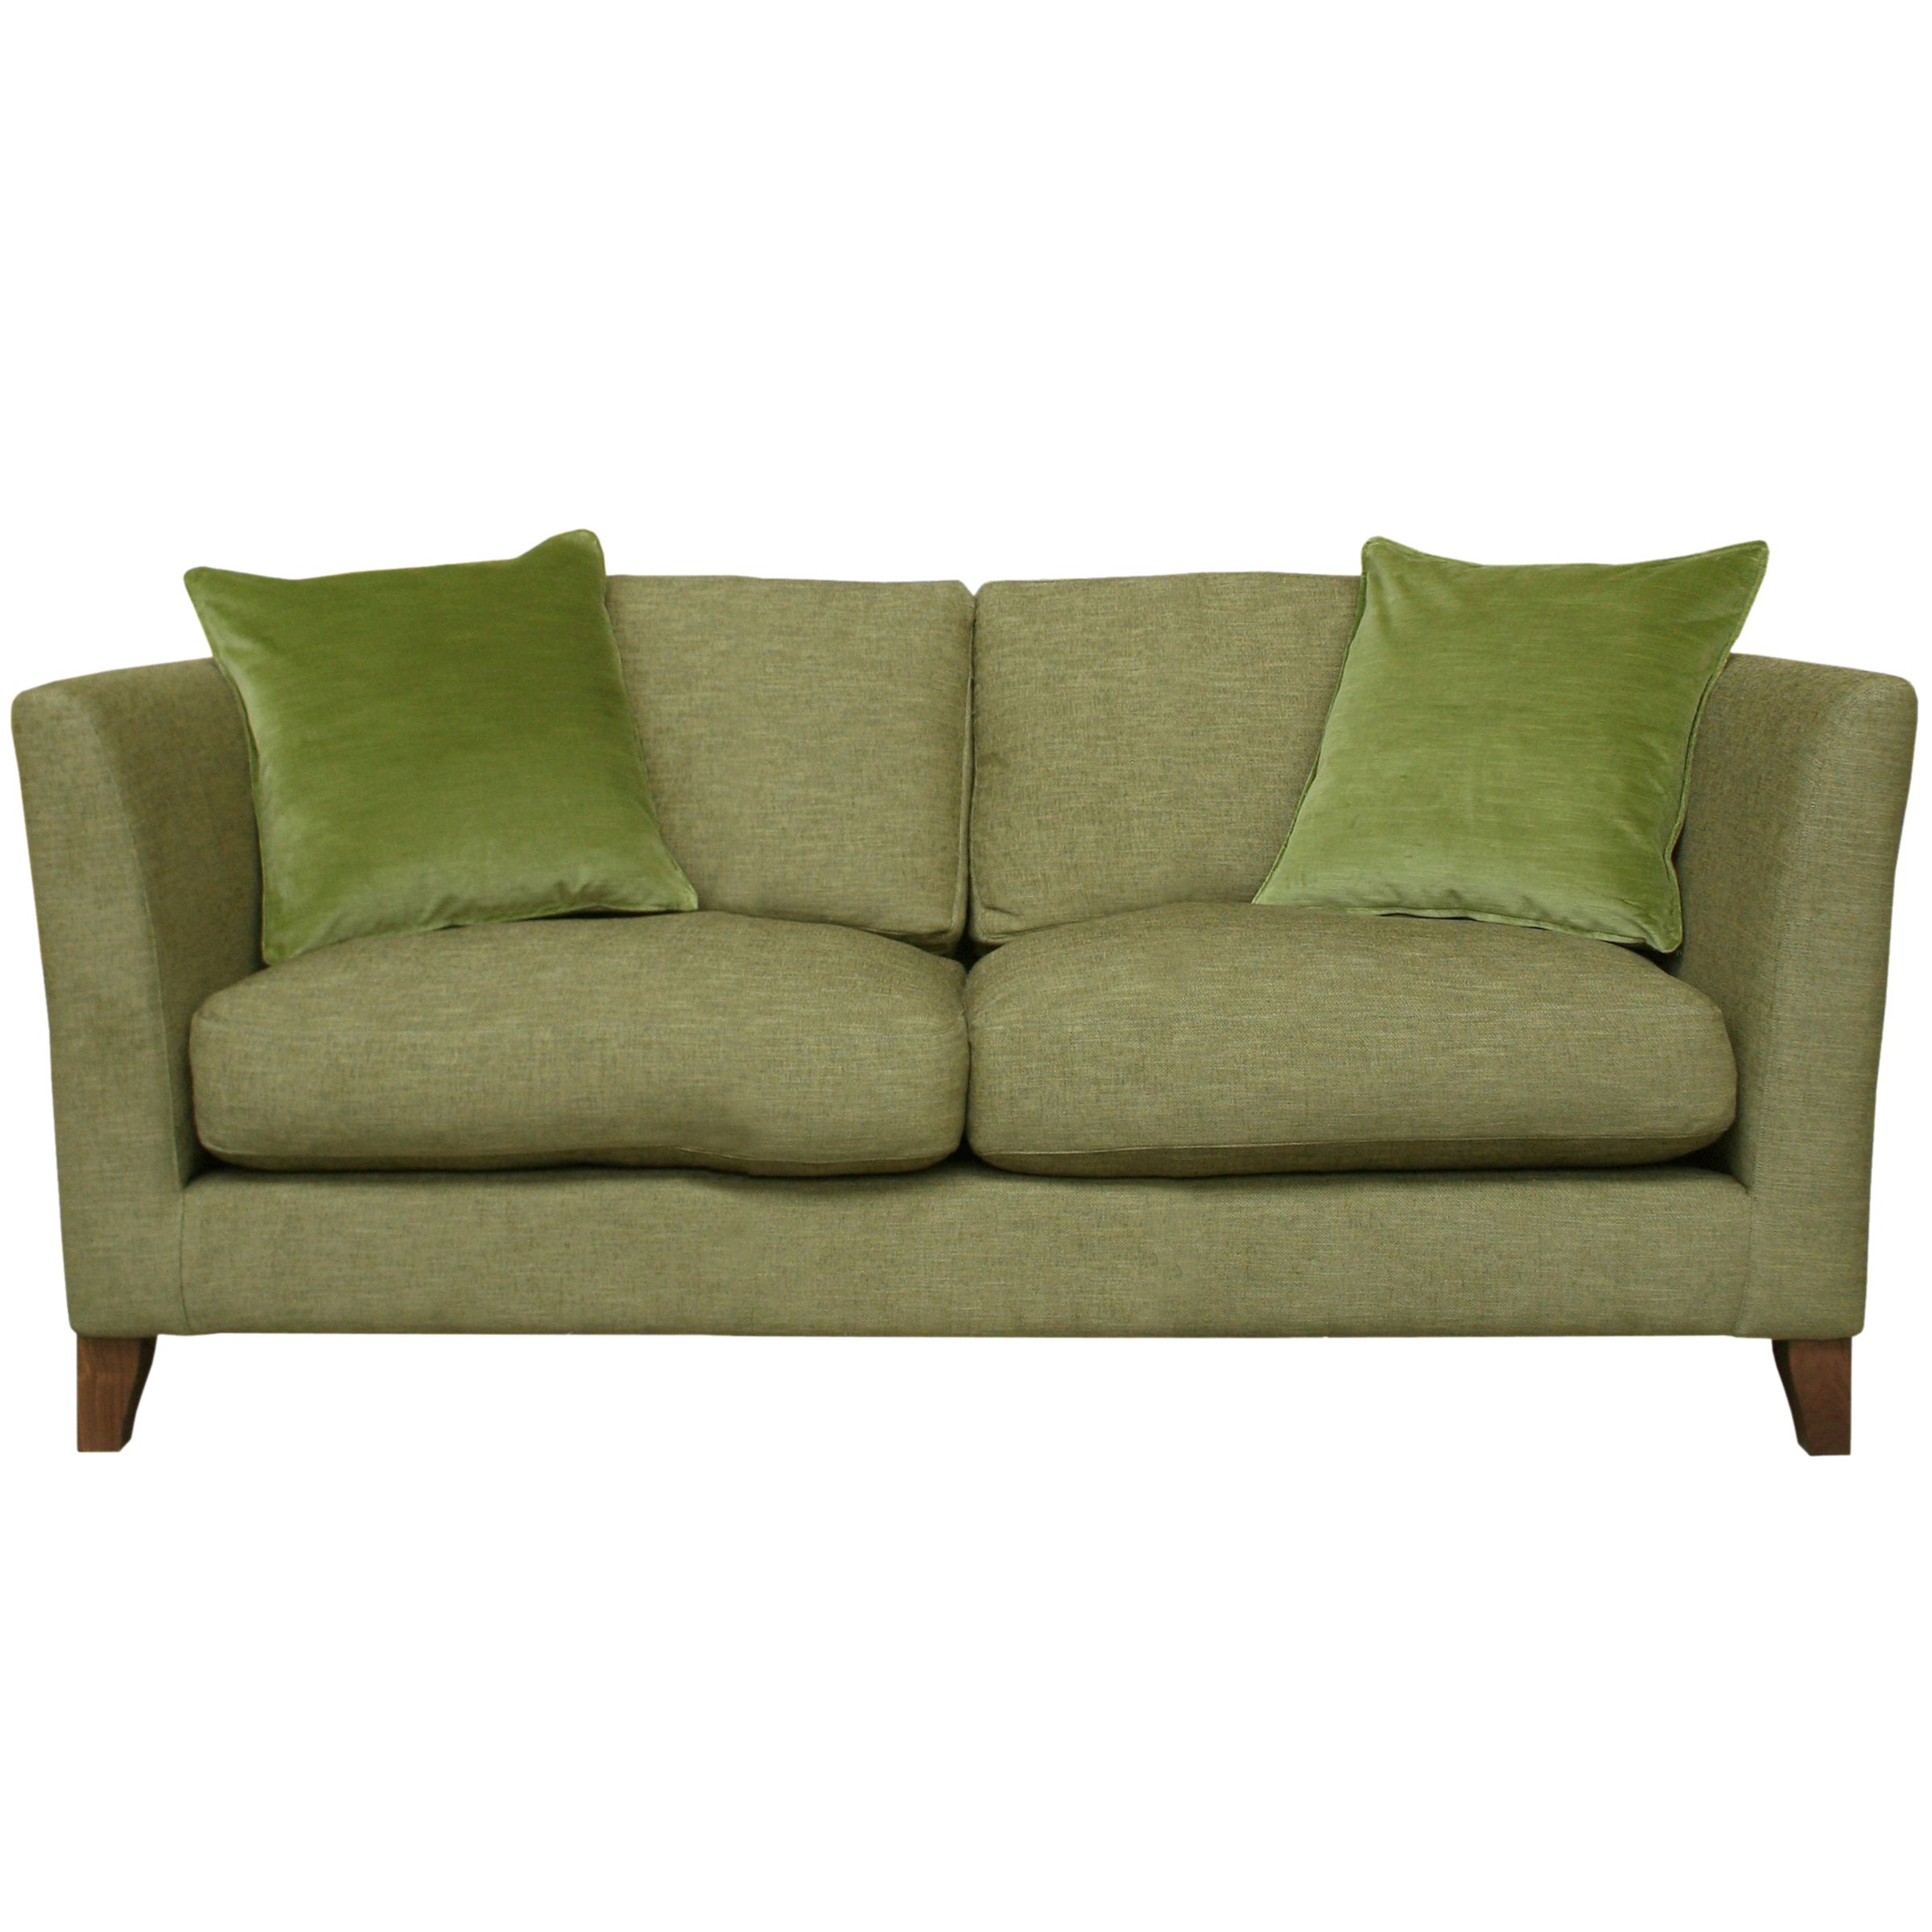 Nick Munro Collection Large Sofa, Cushion Back, Allegra Willow at John Lewis